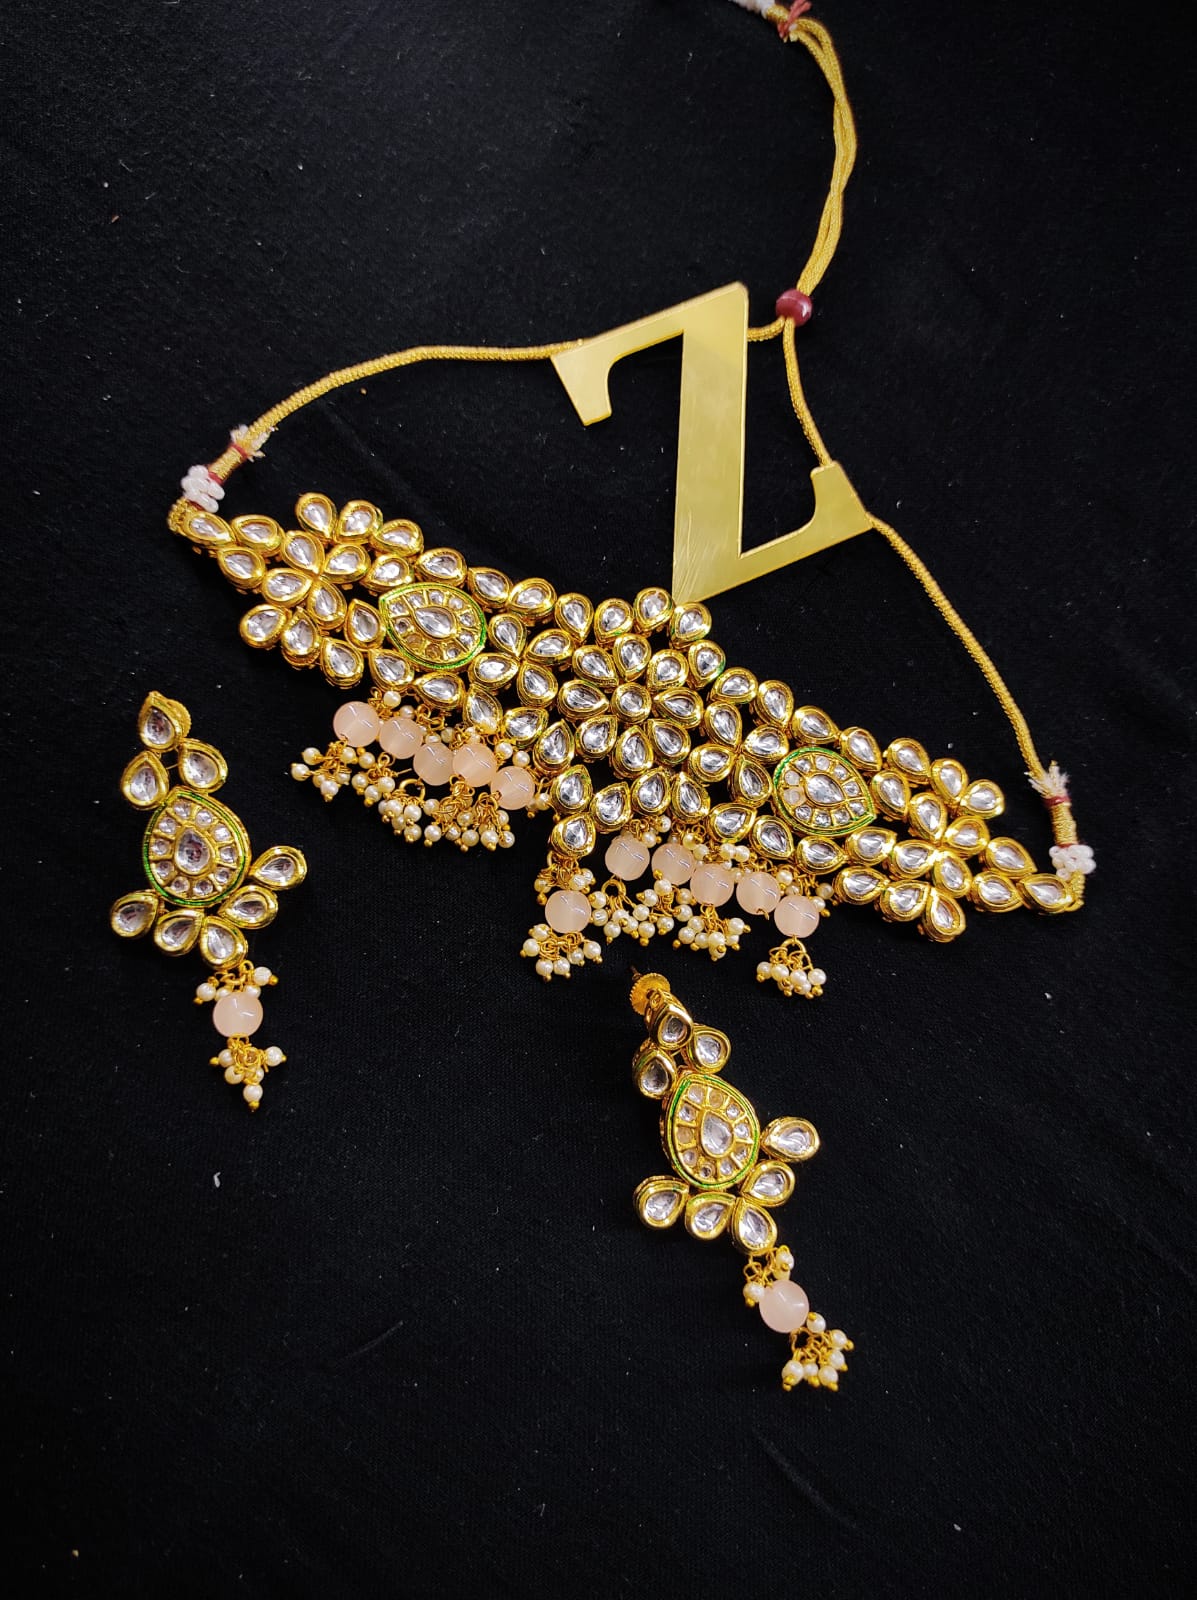 Zevar Jewelry Traditional Kundan Choker Necklace Earrings set By Zevar